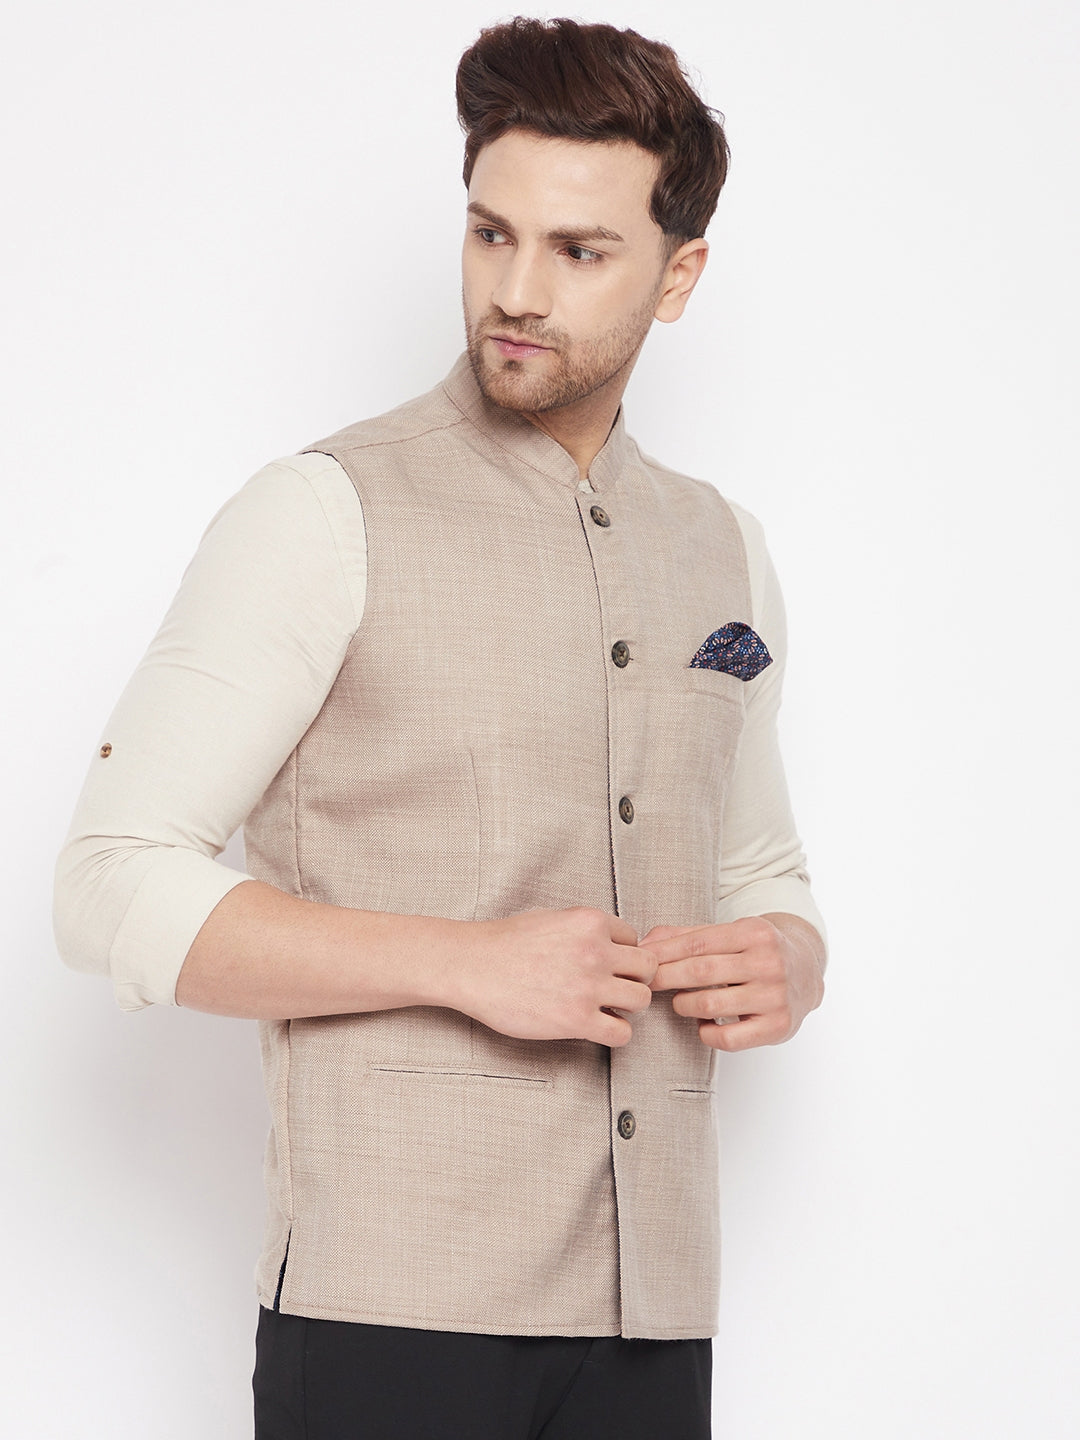 Men's Cream Color Nehru Jacket-Contrast Lining-Inbuilt Pocket Square - Even Apparels